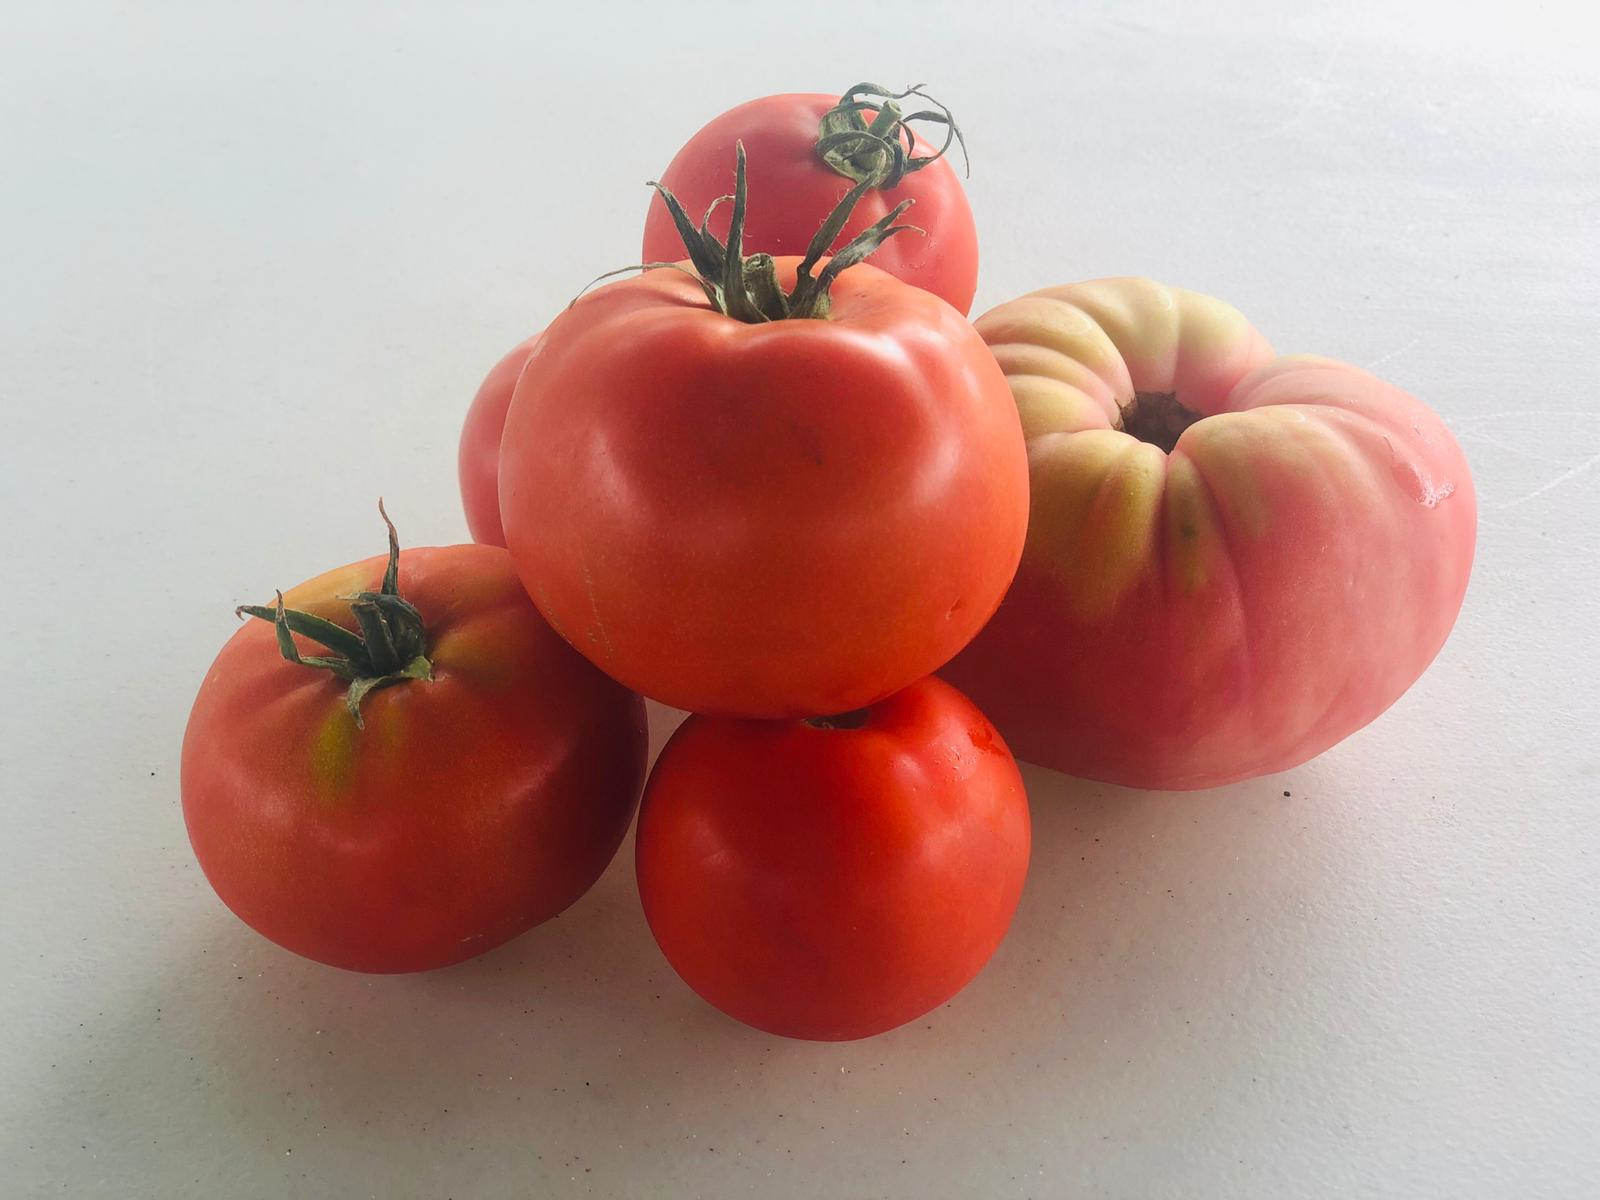 Los primeros tomates, que ya presentaban diferentes formas, tamaños y colores, fueron acogidos entre los cántabros como un alimento más para complementar su dieta